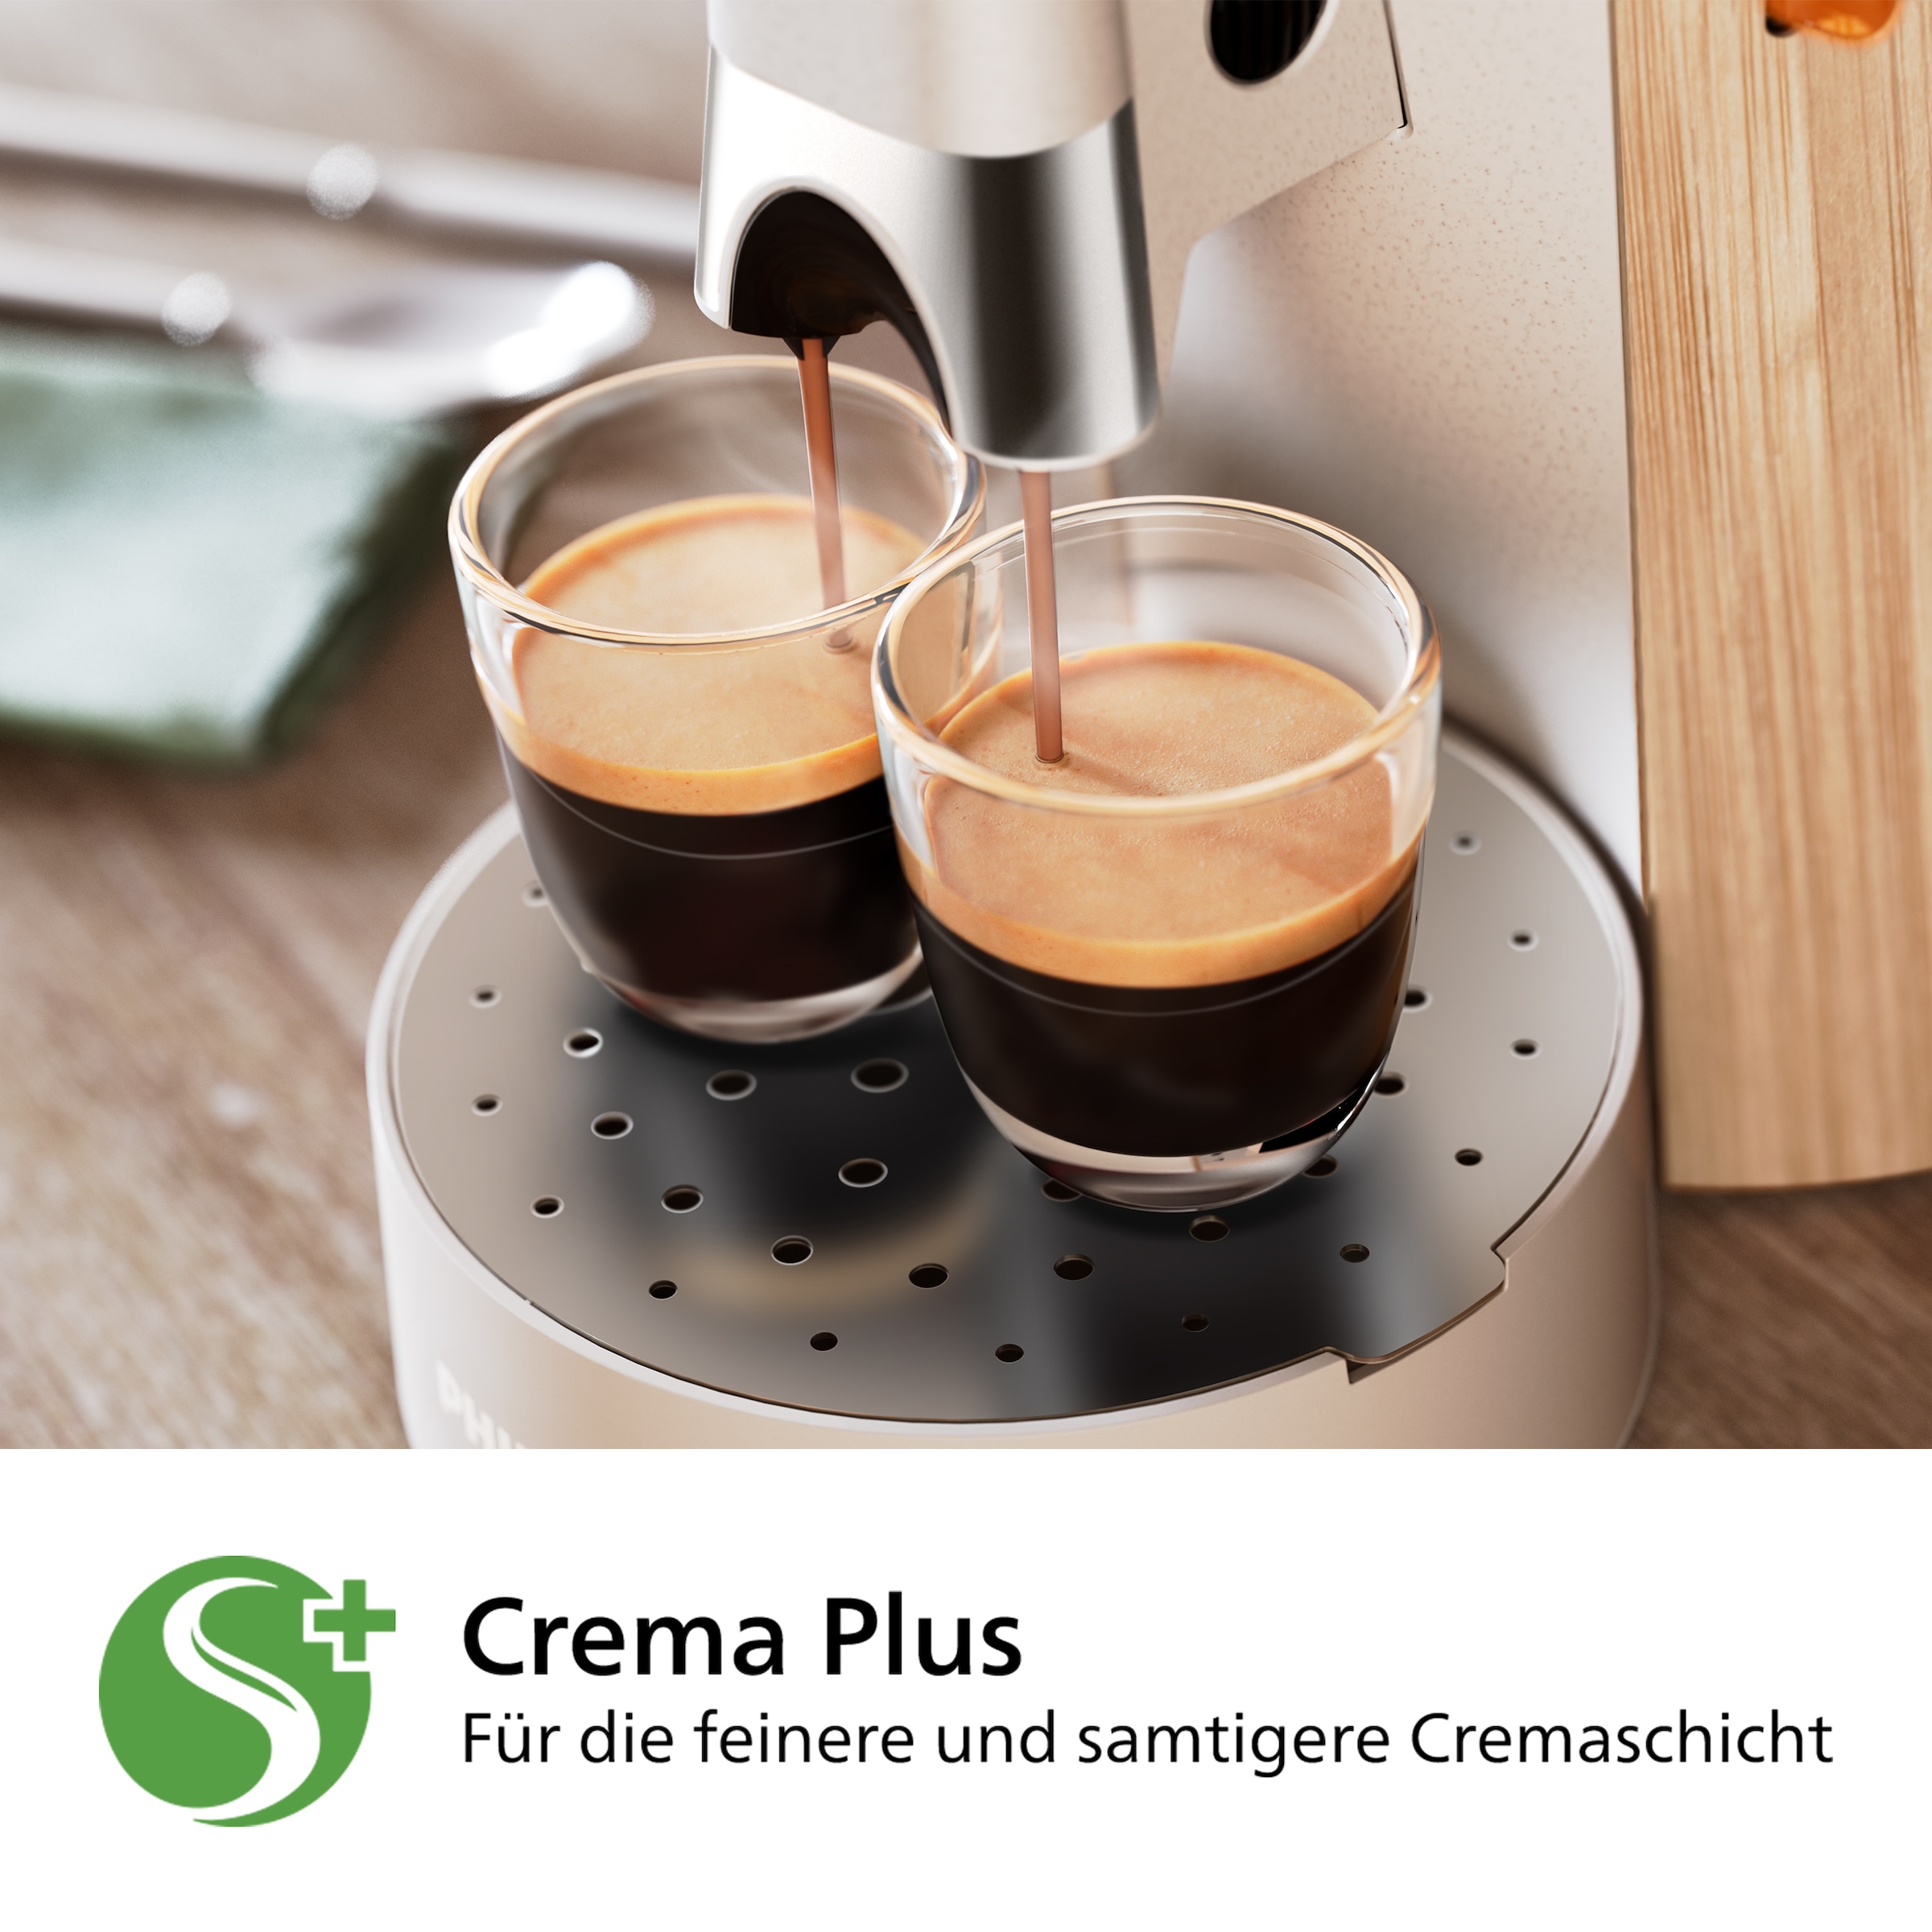 Philips Senseo Kaffeepadmaschine »Select CSA240/05, mit 37 % biobasiertem Kunststoff, Intensity Plus,«, Memo-Funktion für 3 Geschmacksrichtungen, Crema Plus, Seidenweiß